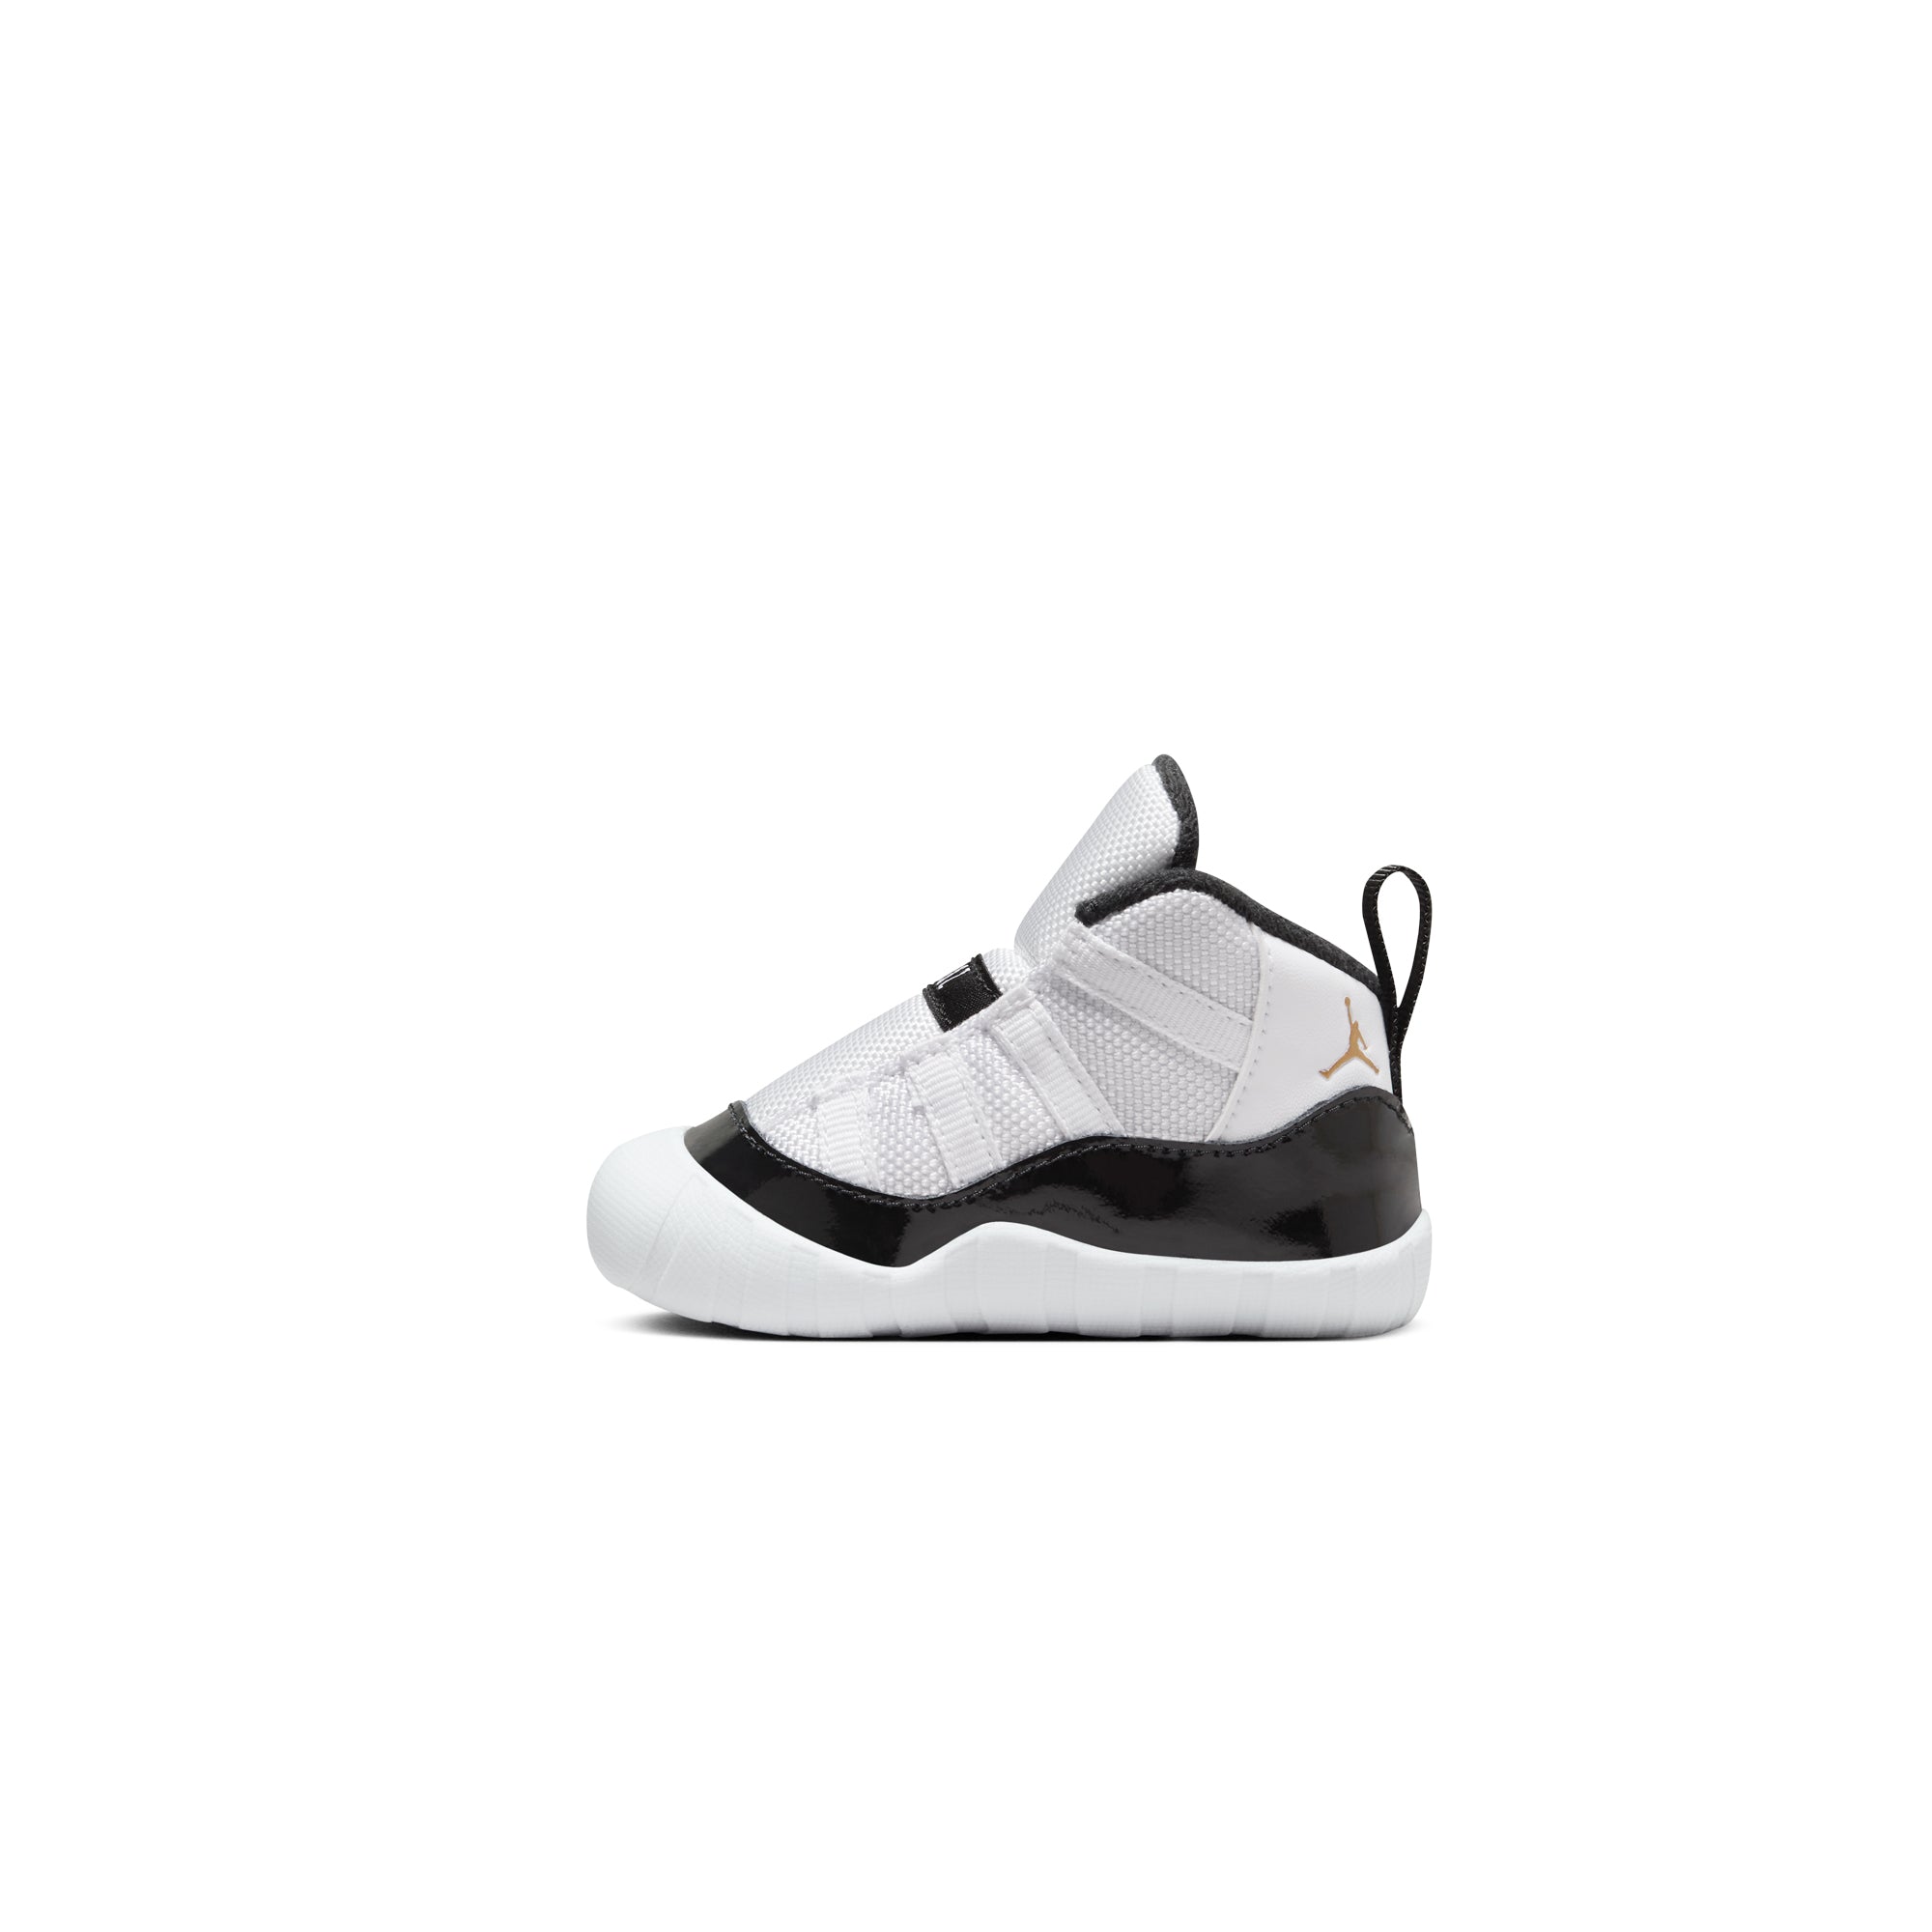 Air Jordan 11 Sneakers